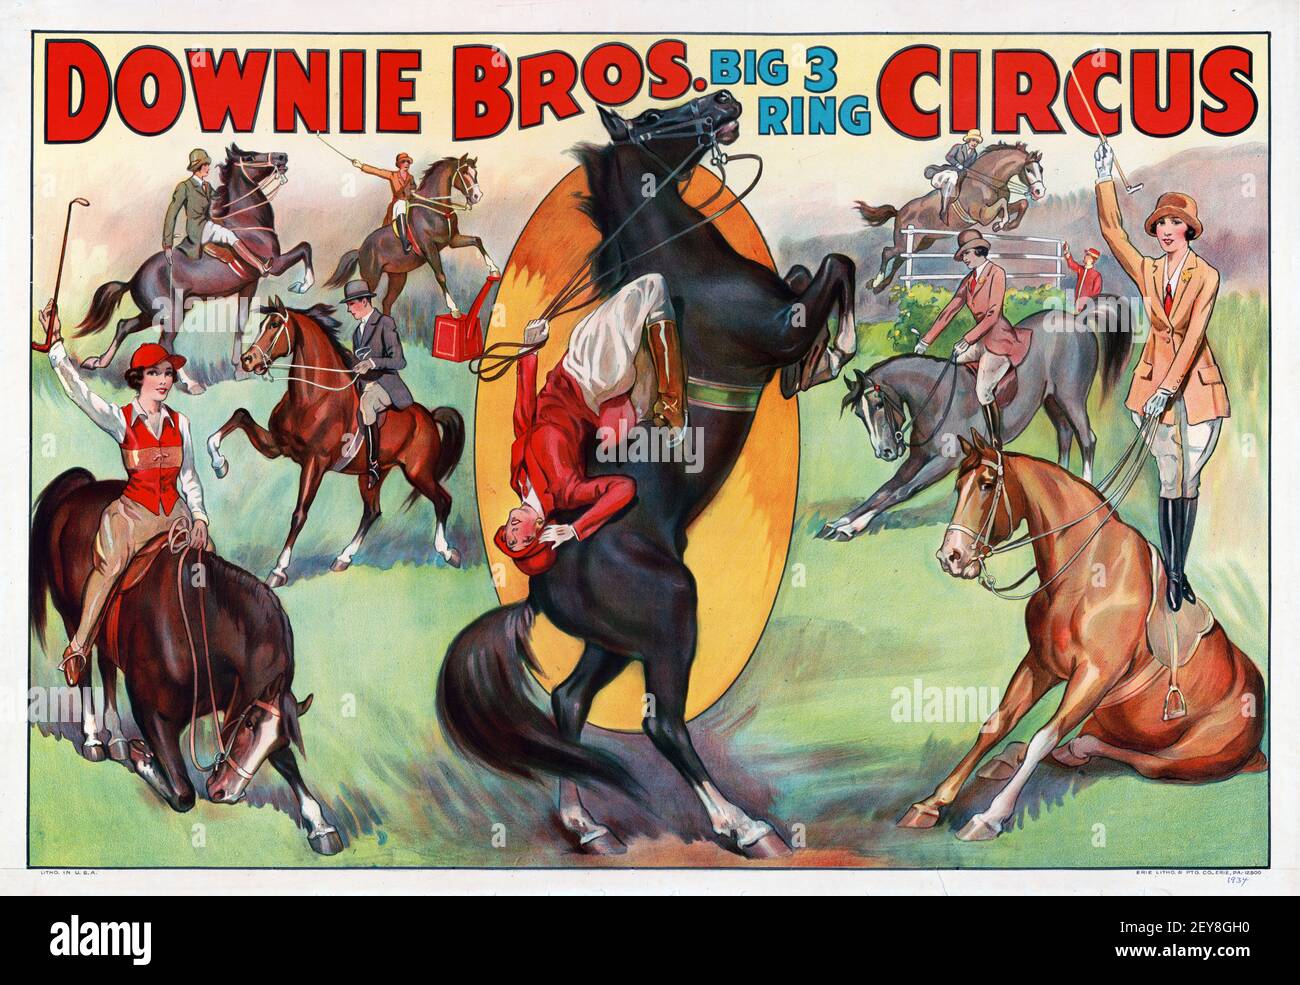 Downie Bros, Big 3 Ring Circus. Klassisches Zirkusposter mit Pferden. Pferdeshow im alten und Vintage-Stil. Stockfoto